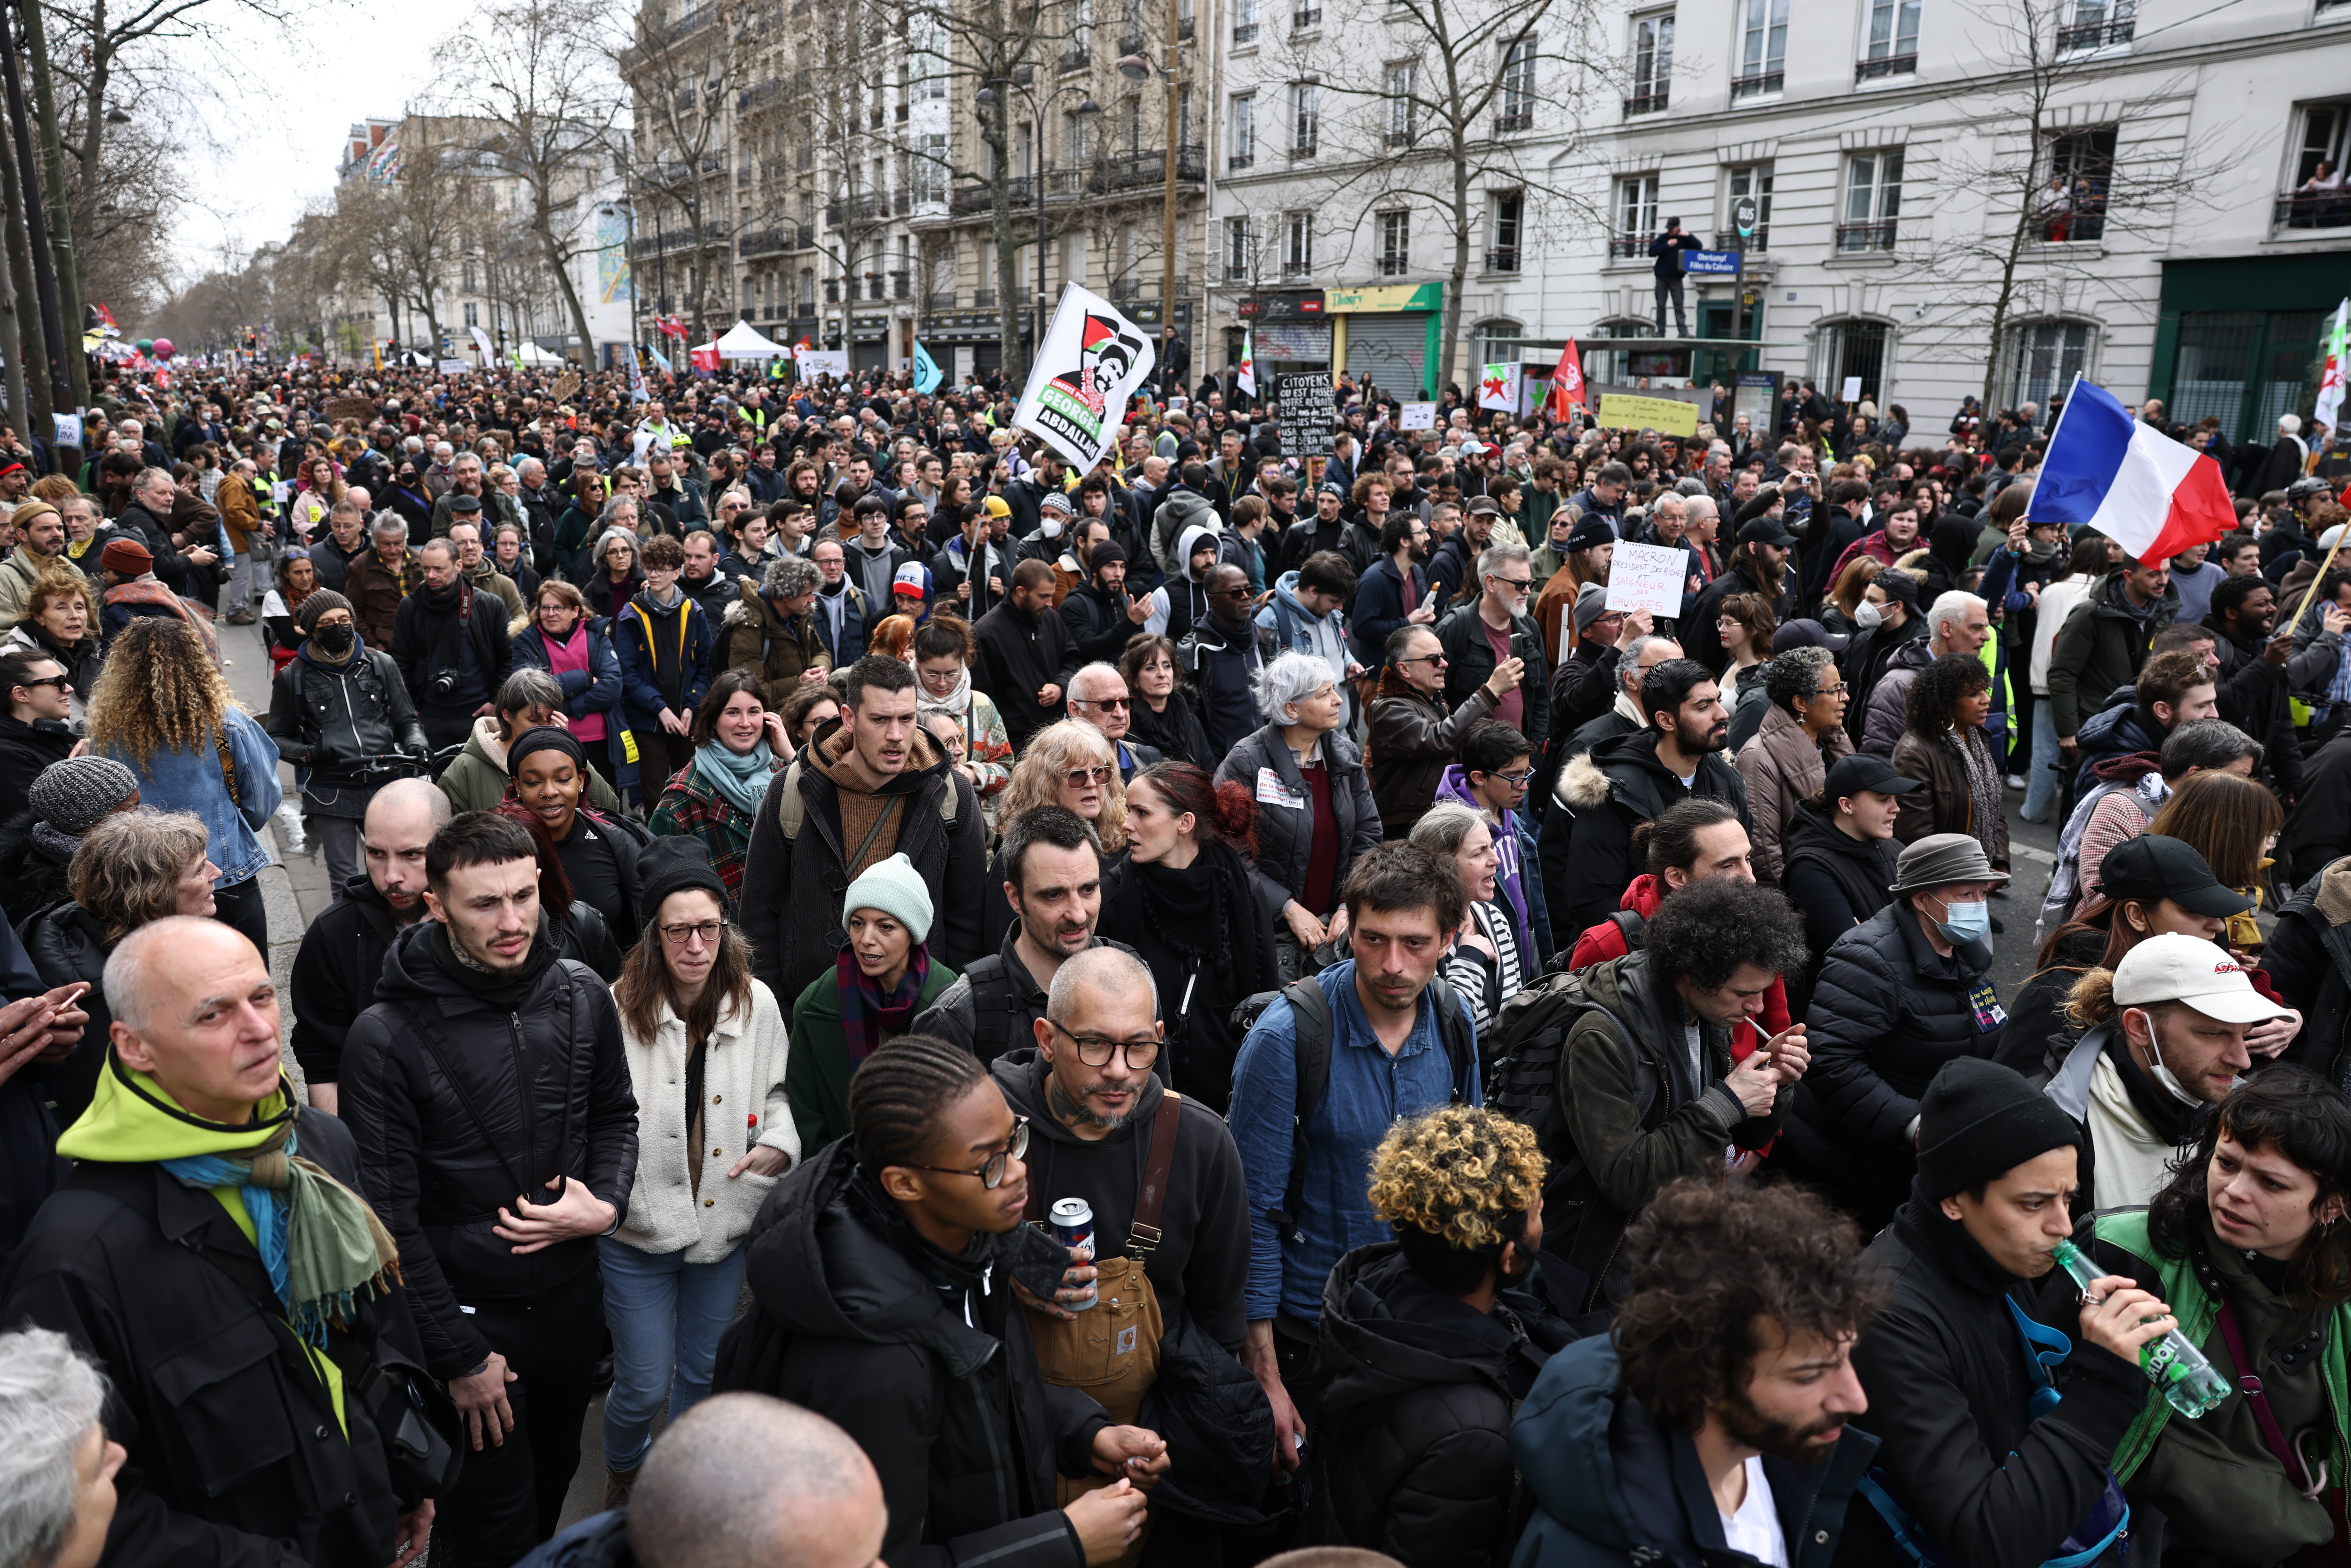 Ce jeudi s’est ouvert une nouvelle grande journée de mobilisation à travers la France contre la réforme des retraites, avec des grèves dans différents secteurs et de nombreuses manifestations, comme ici à Paris. LP/Frédéric Dugit